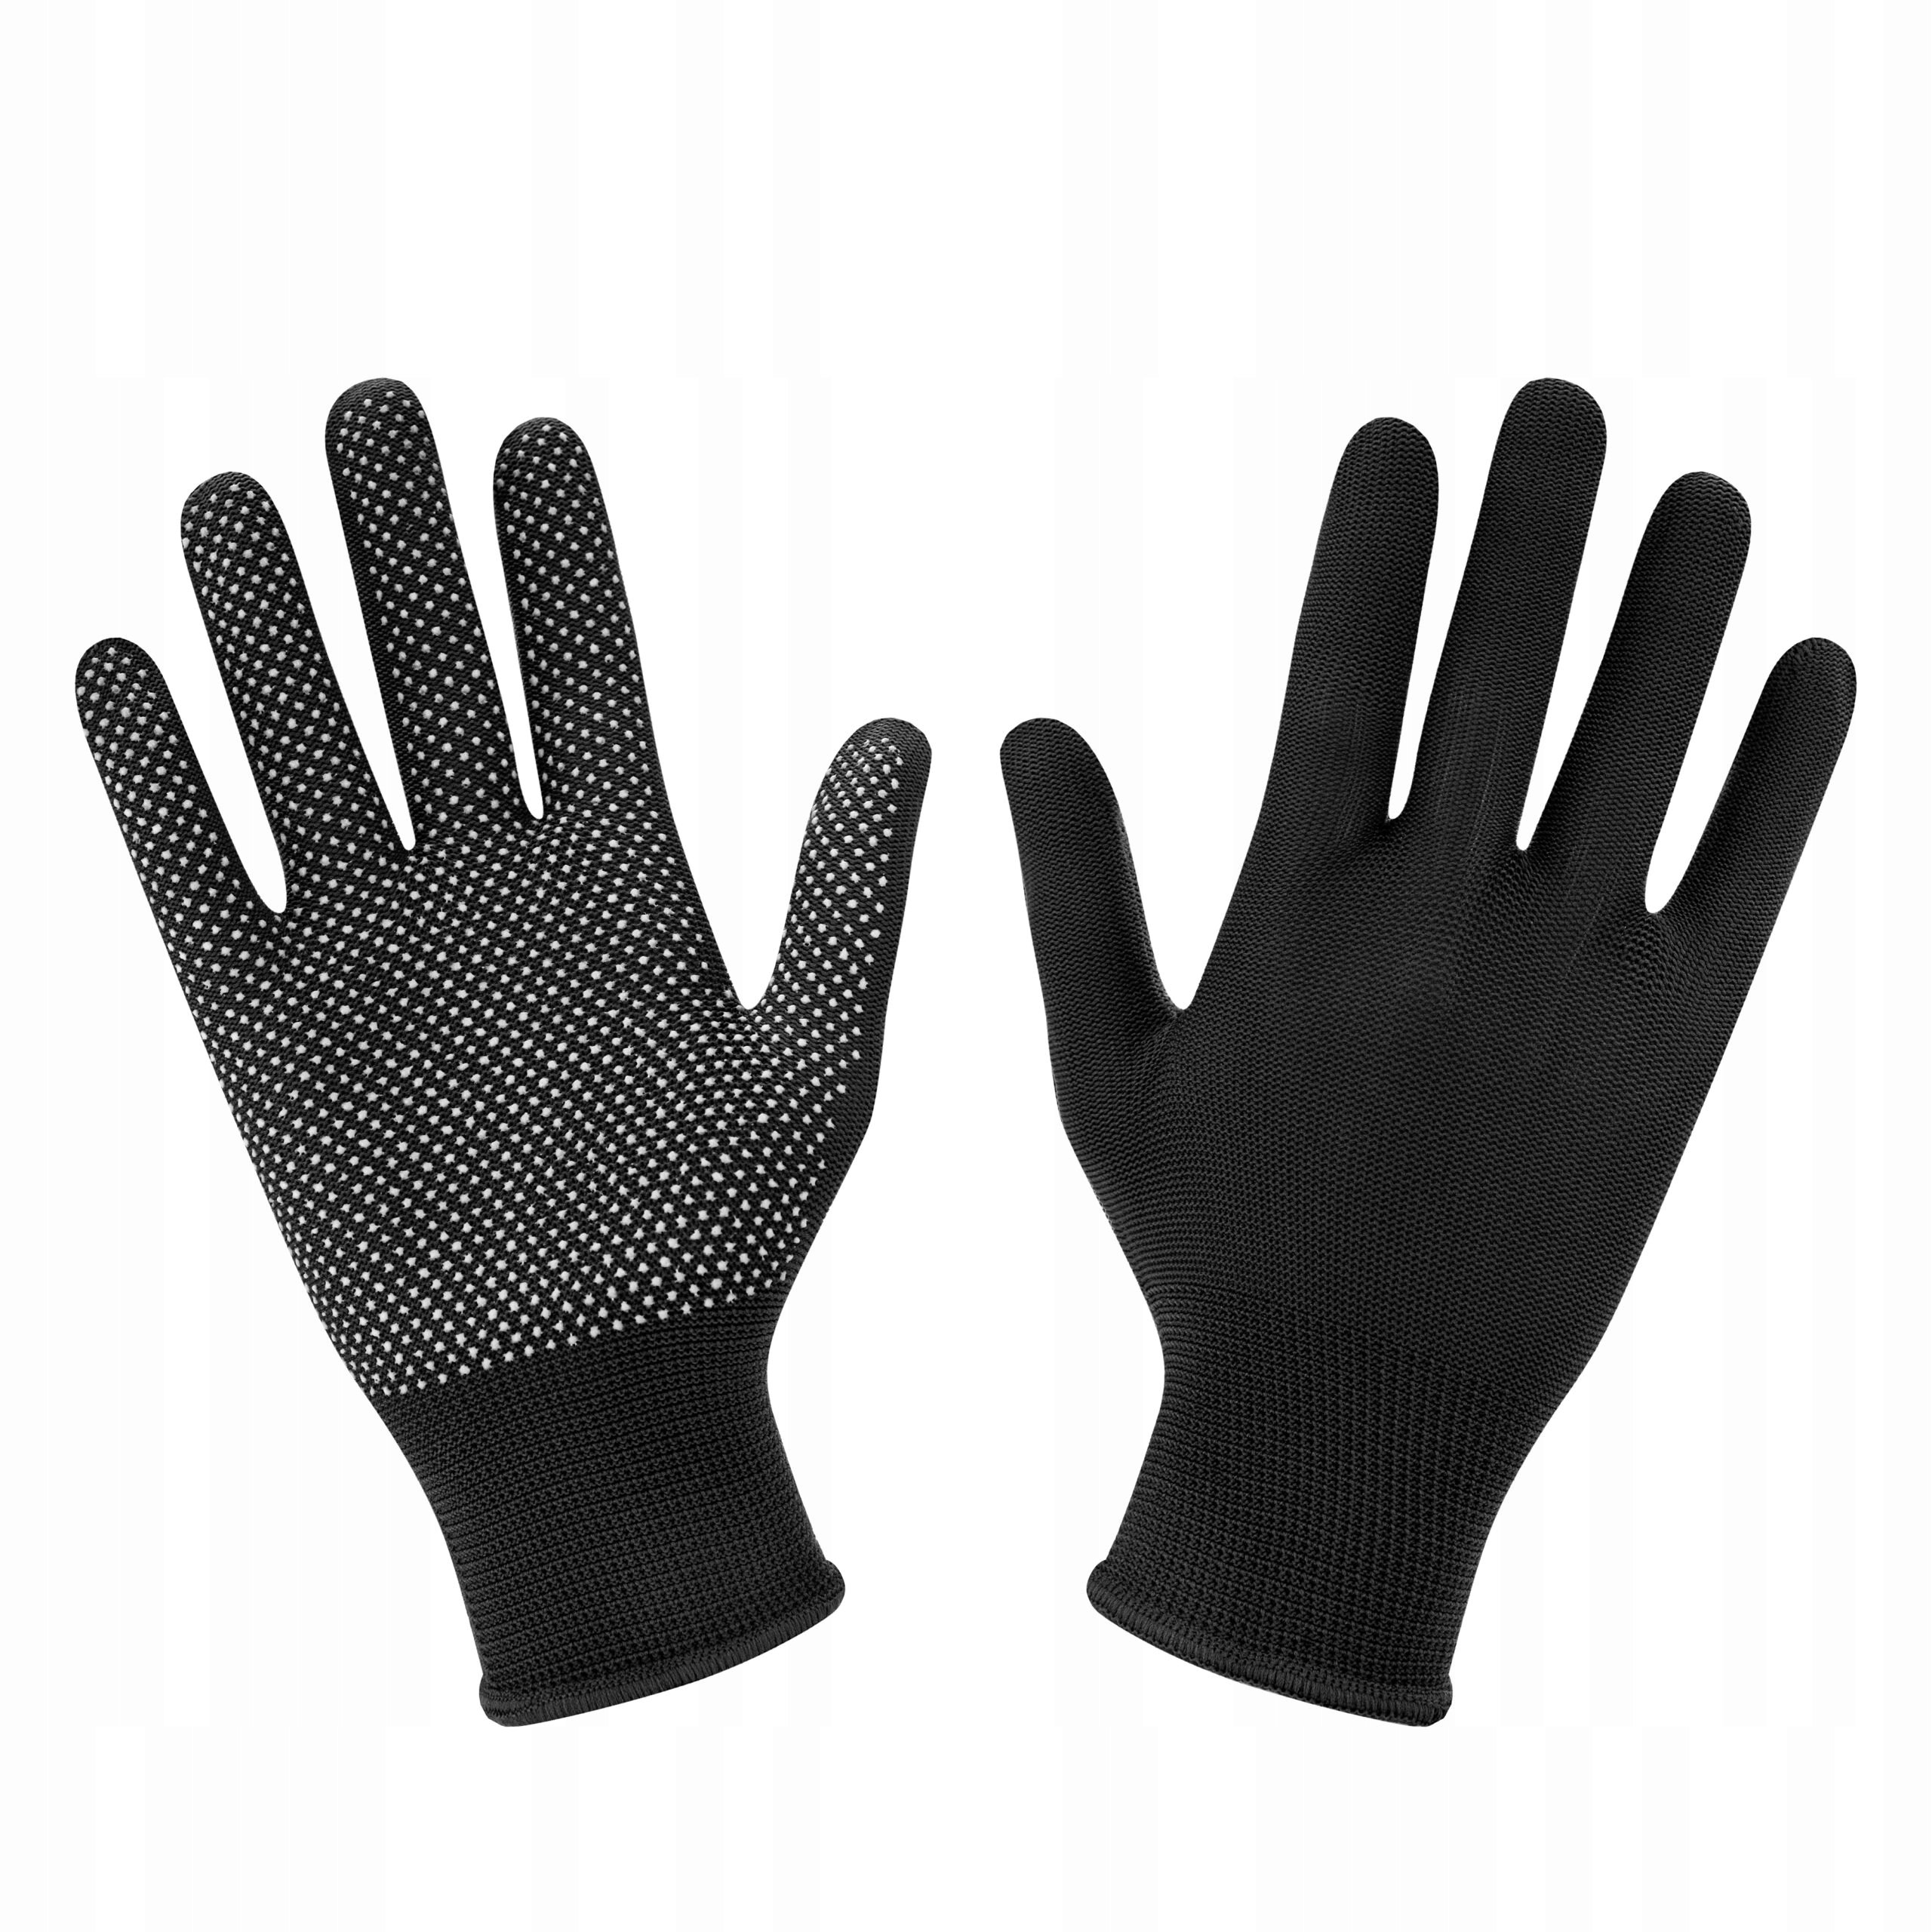 Rękawice antypoślizgowe materiałowe niebieskie 5 par czarne Liczba par w opakowaniu 5